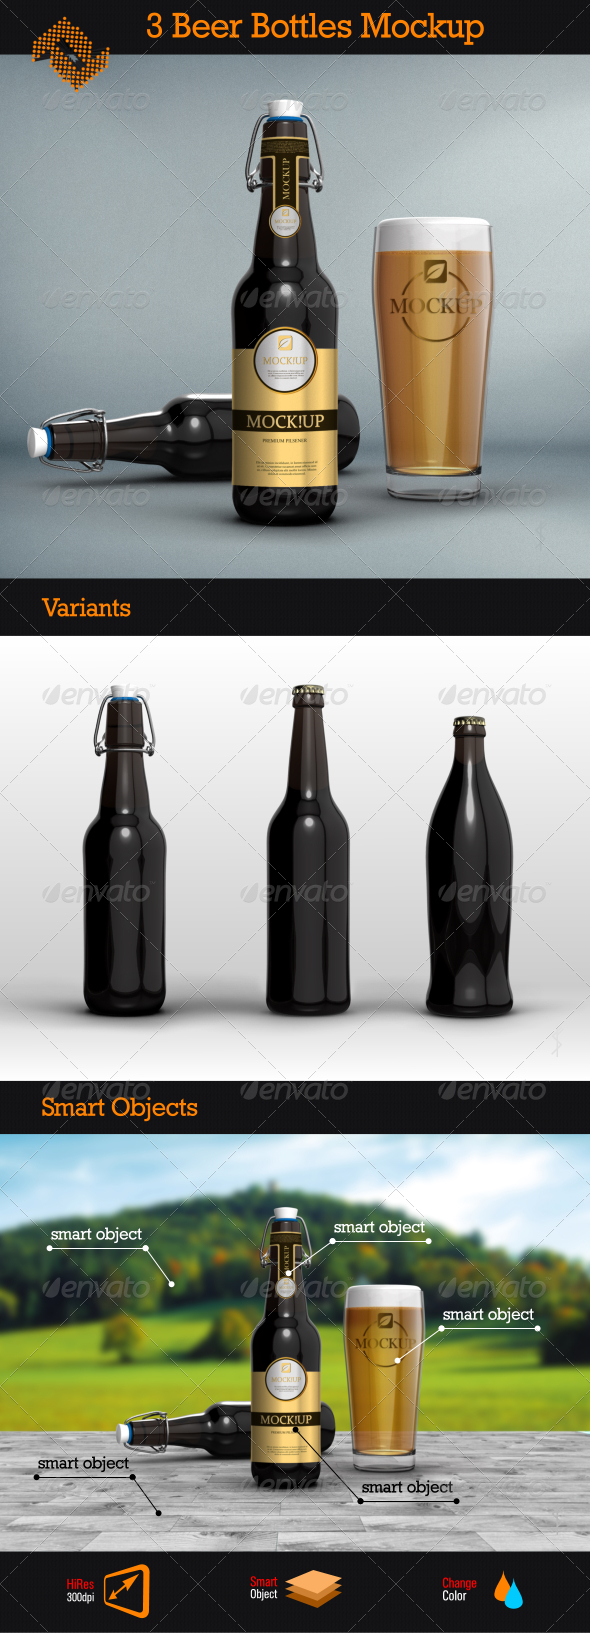 bottles_prev.jpg